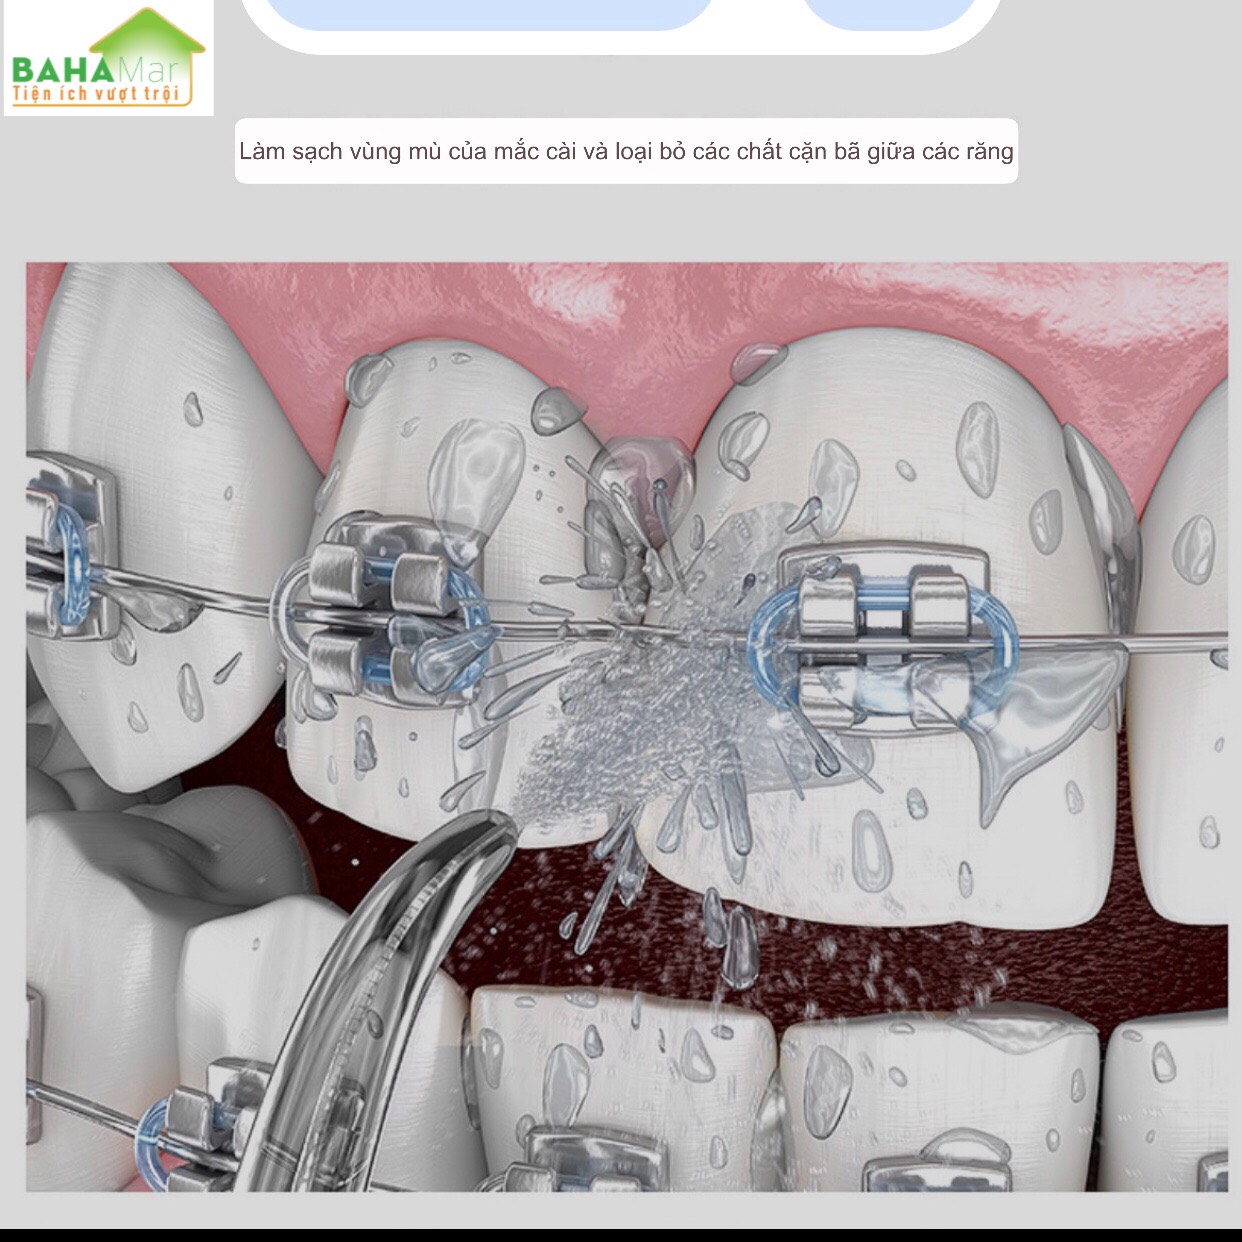 MÁY TĂM NƯỚC CẦM TAY HYUNDAI - Tăm nước vệ sinh răng miệng cực sạch "BAHAMAR" thiết kế giúp làm sạch các mãng bám trên răng, các thức ăn kẹt trong các kẻ răng, vi khuẩn một cách hiệu quả, tạo cảm giác dễ chịu